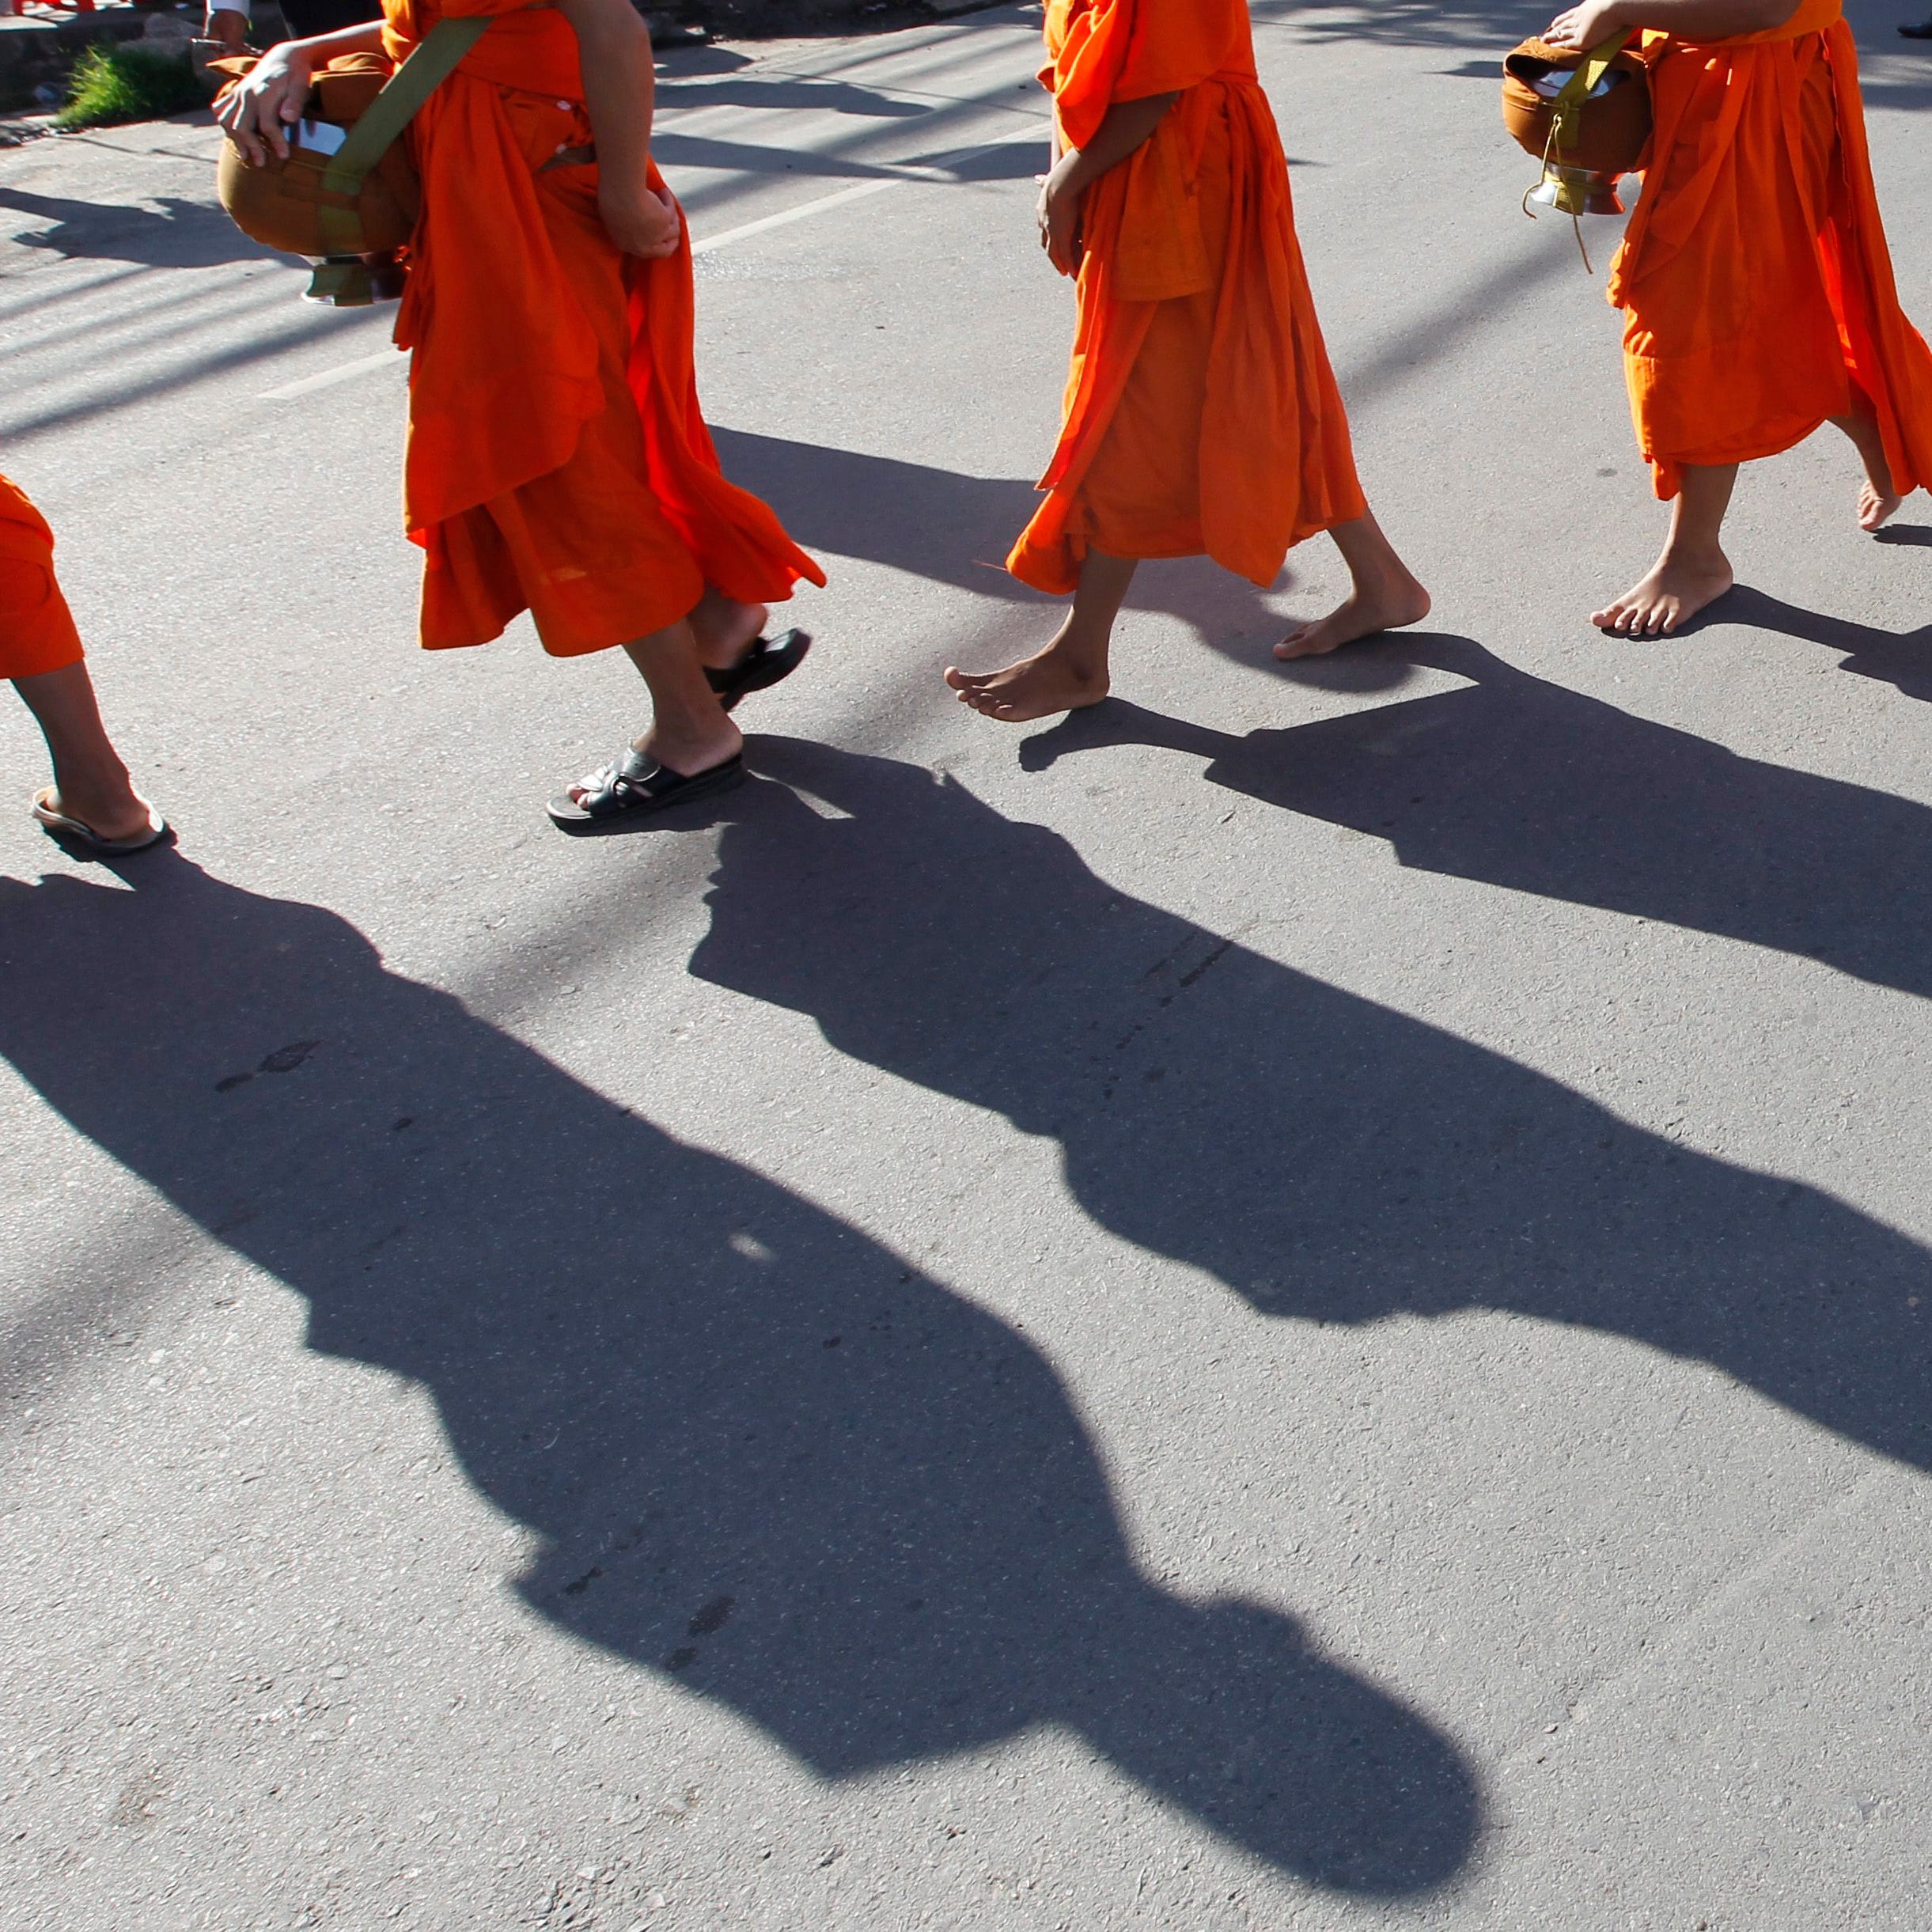 File picture - Buddhist monks attend a ceremony in Phnom Penh, Cambodia, June 4, 2016.